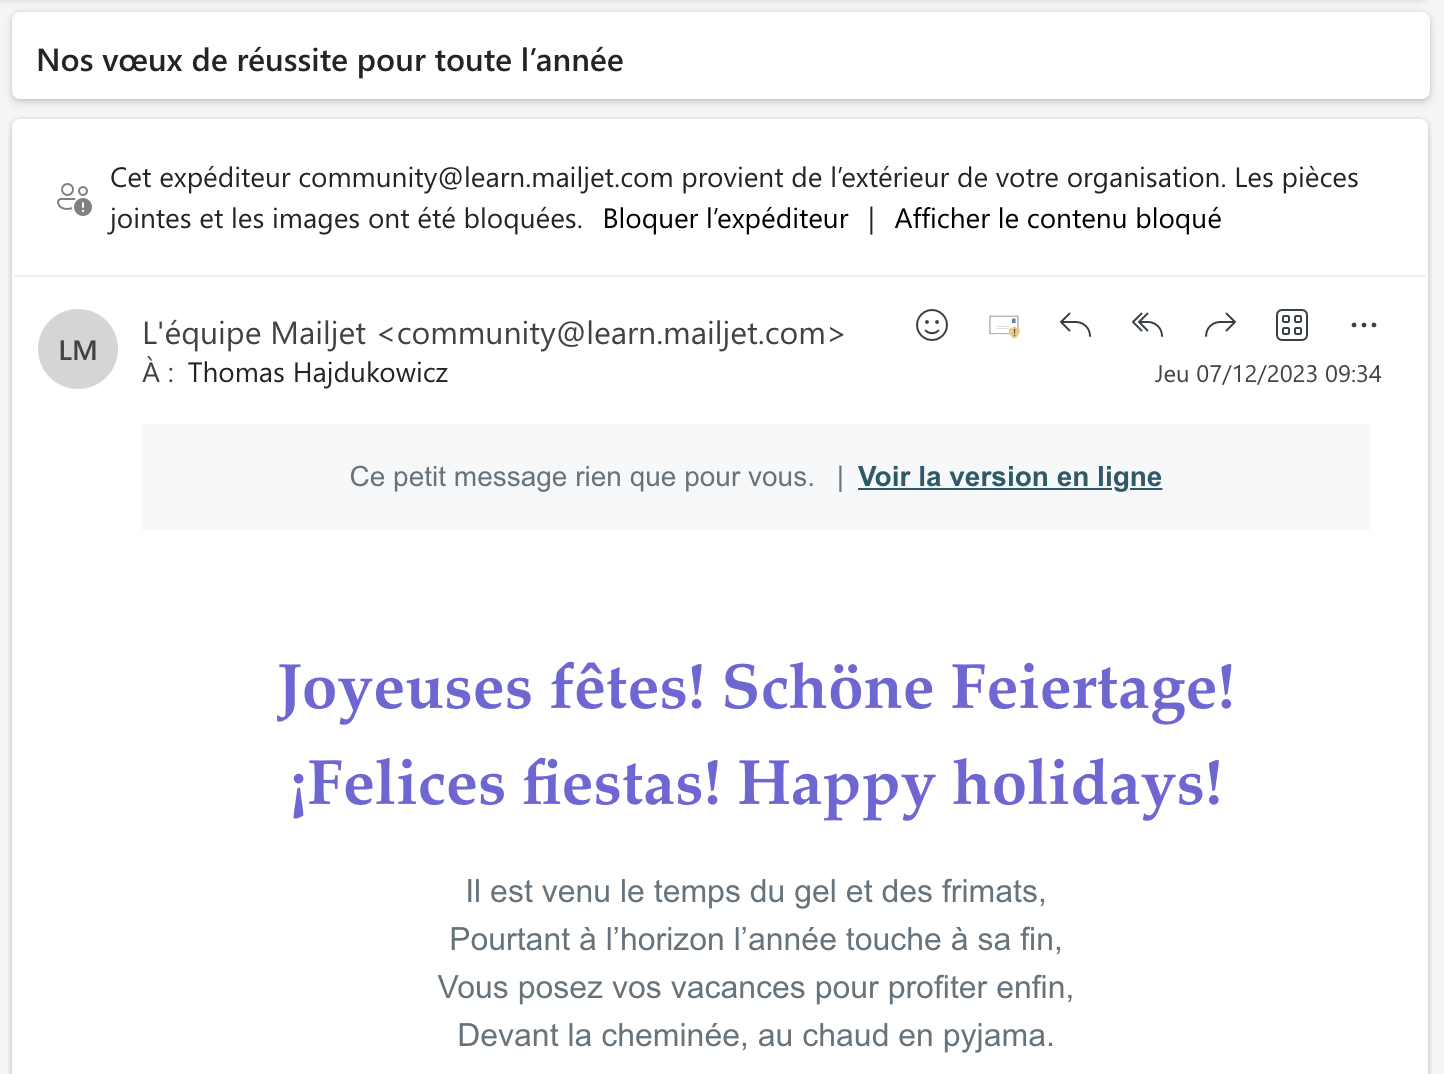 Capture d’�écran de l’email envoyé par Mailjet pour souhaiter de joyeuses fêtes à ses abonnés